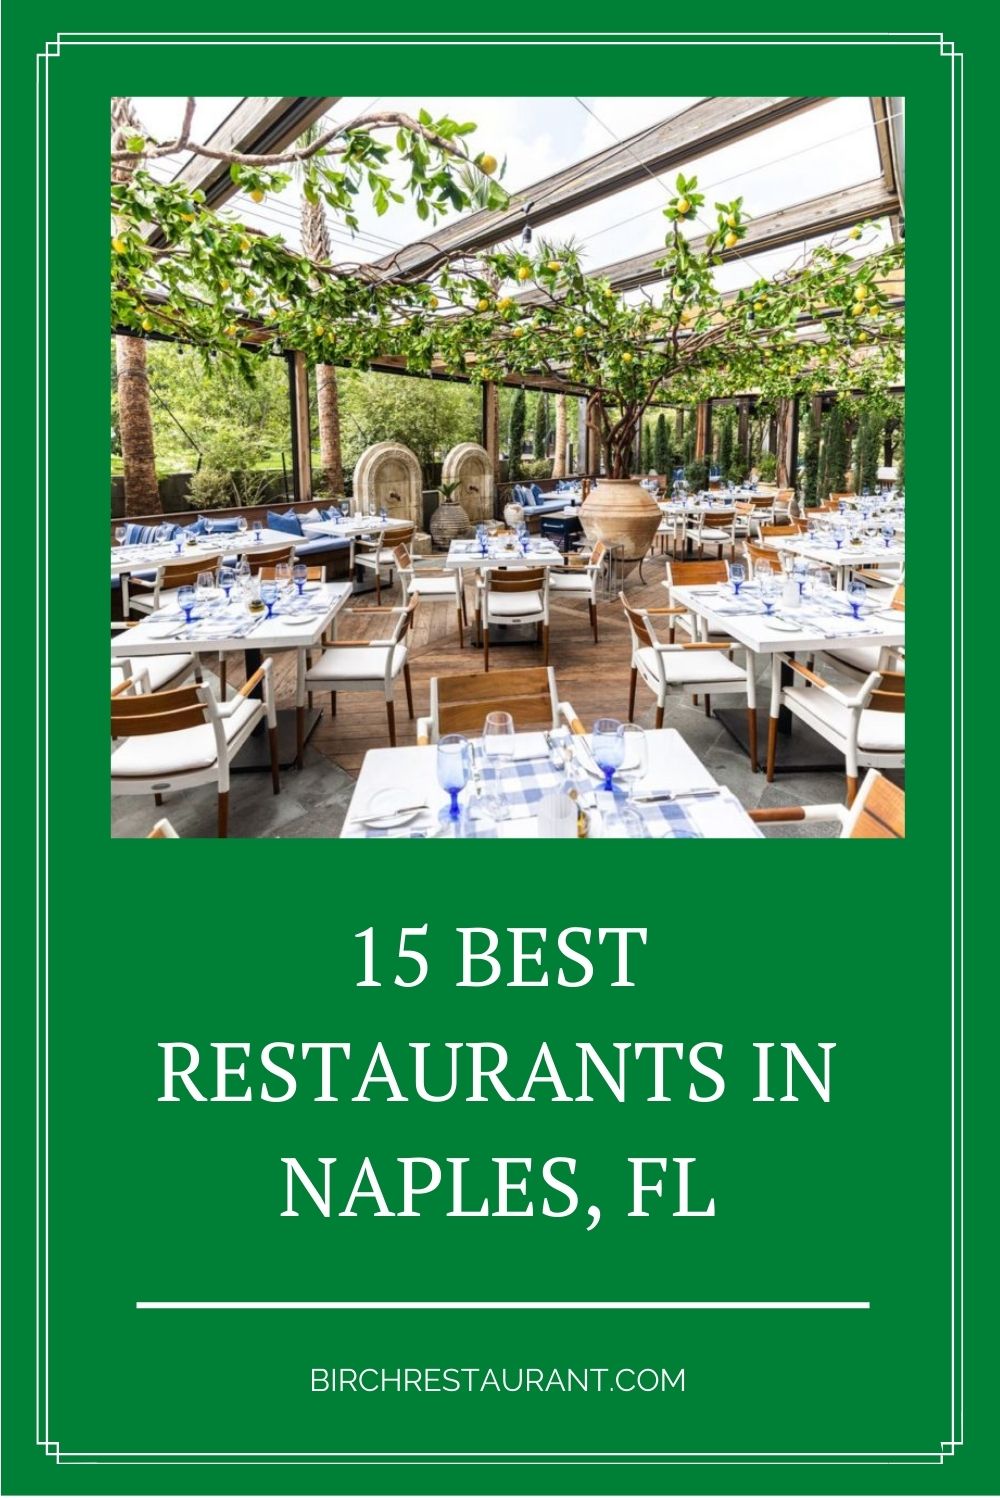 Best Restaurants in Naples